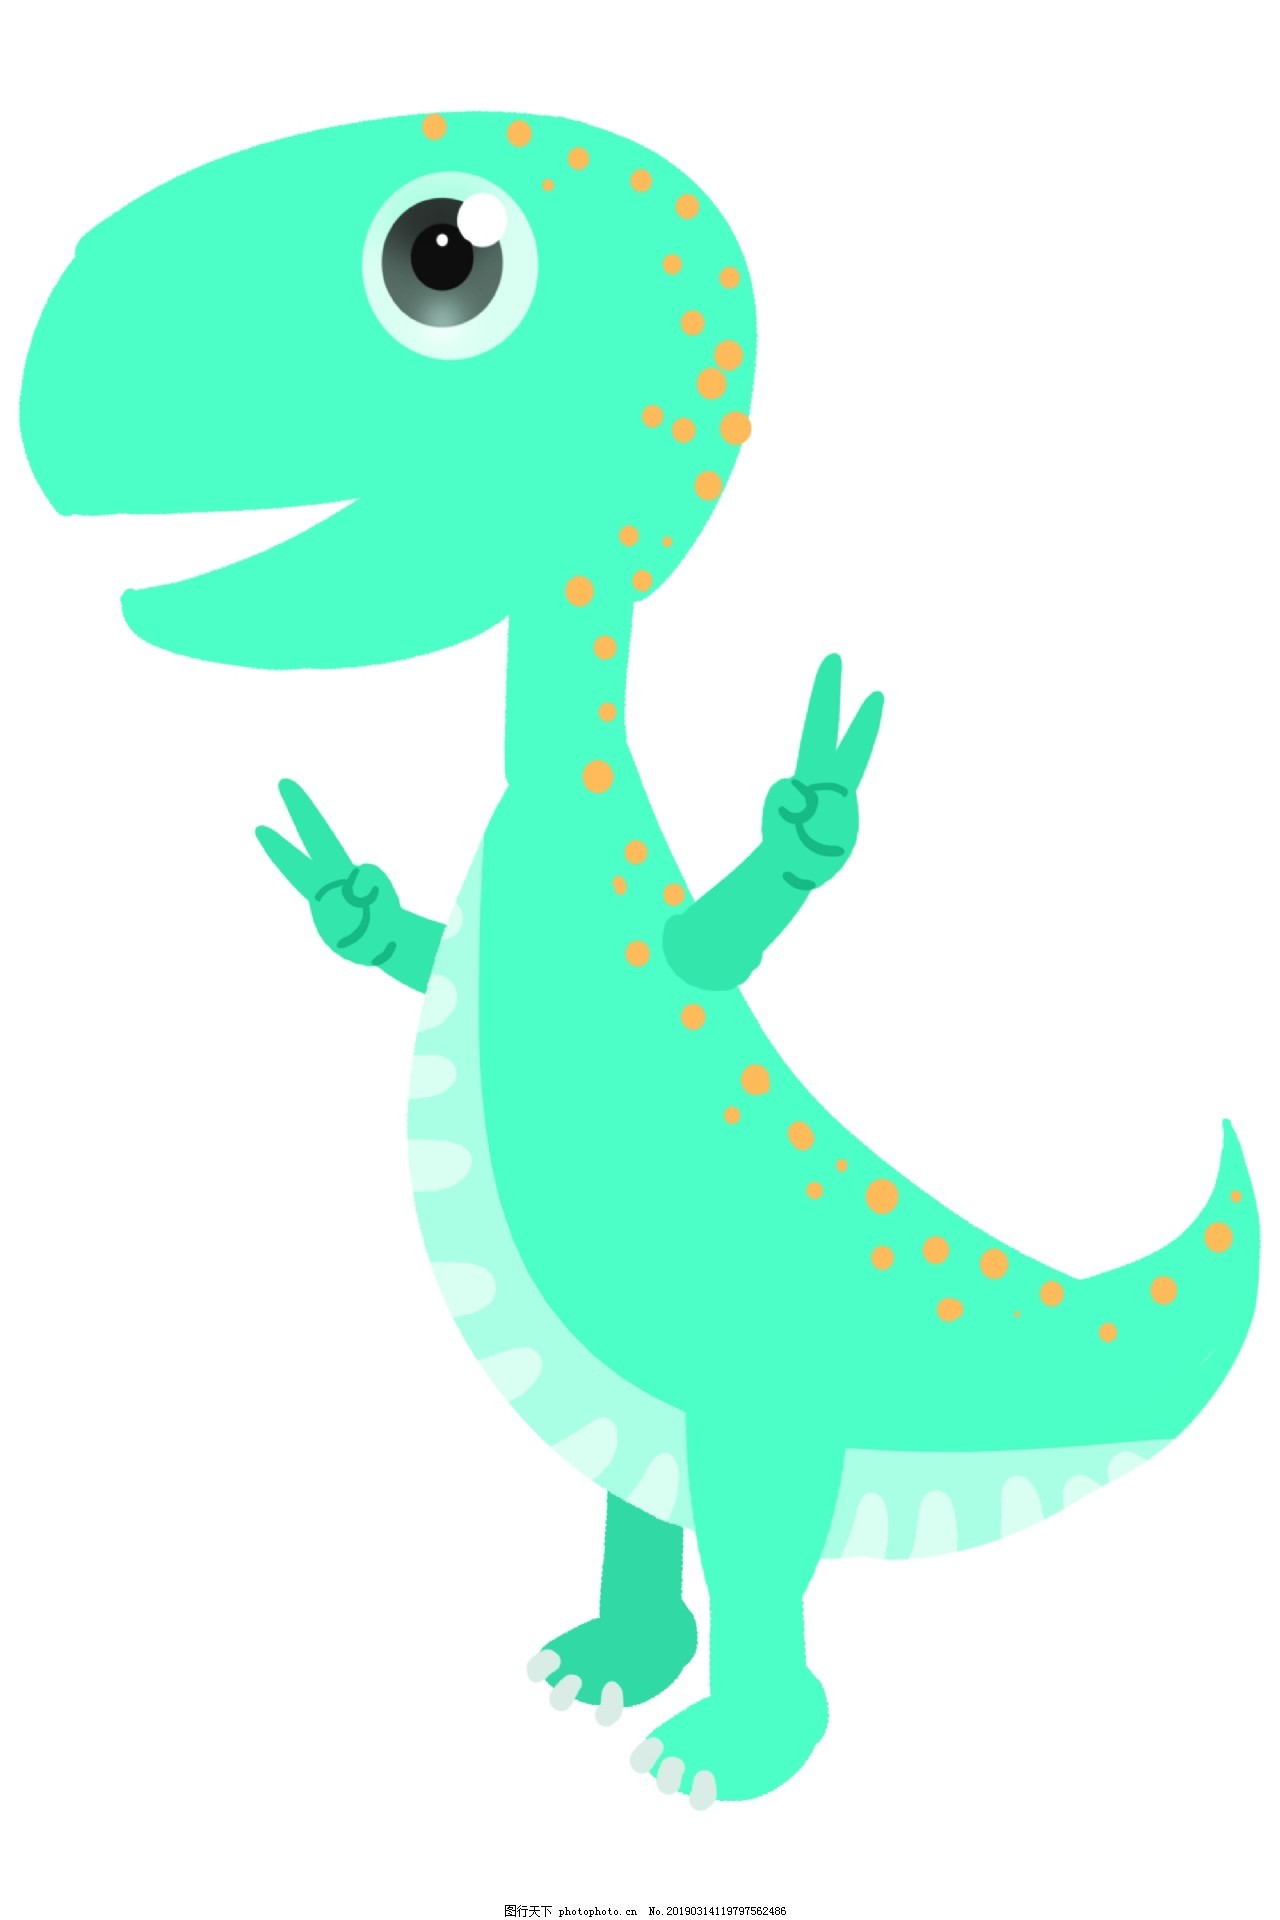 綠色的恐龍 卡通插畫 恐龍插畫 動物插畫, 恐龍剪貼畫, 綠色恐龍, 卡通的插畫素材圖案，PSD和PNG圖片免費下載